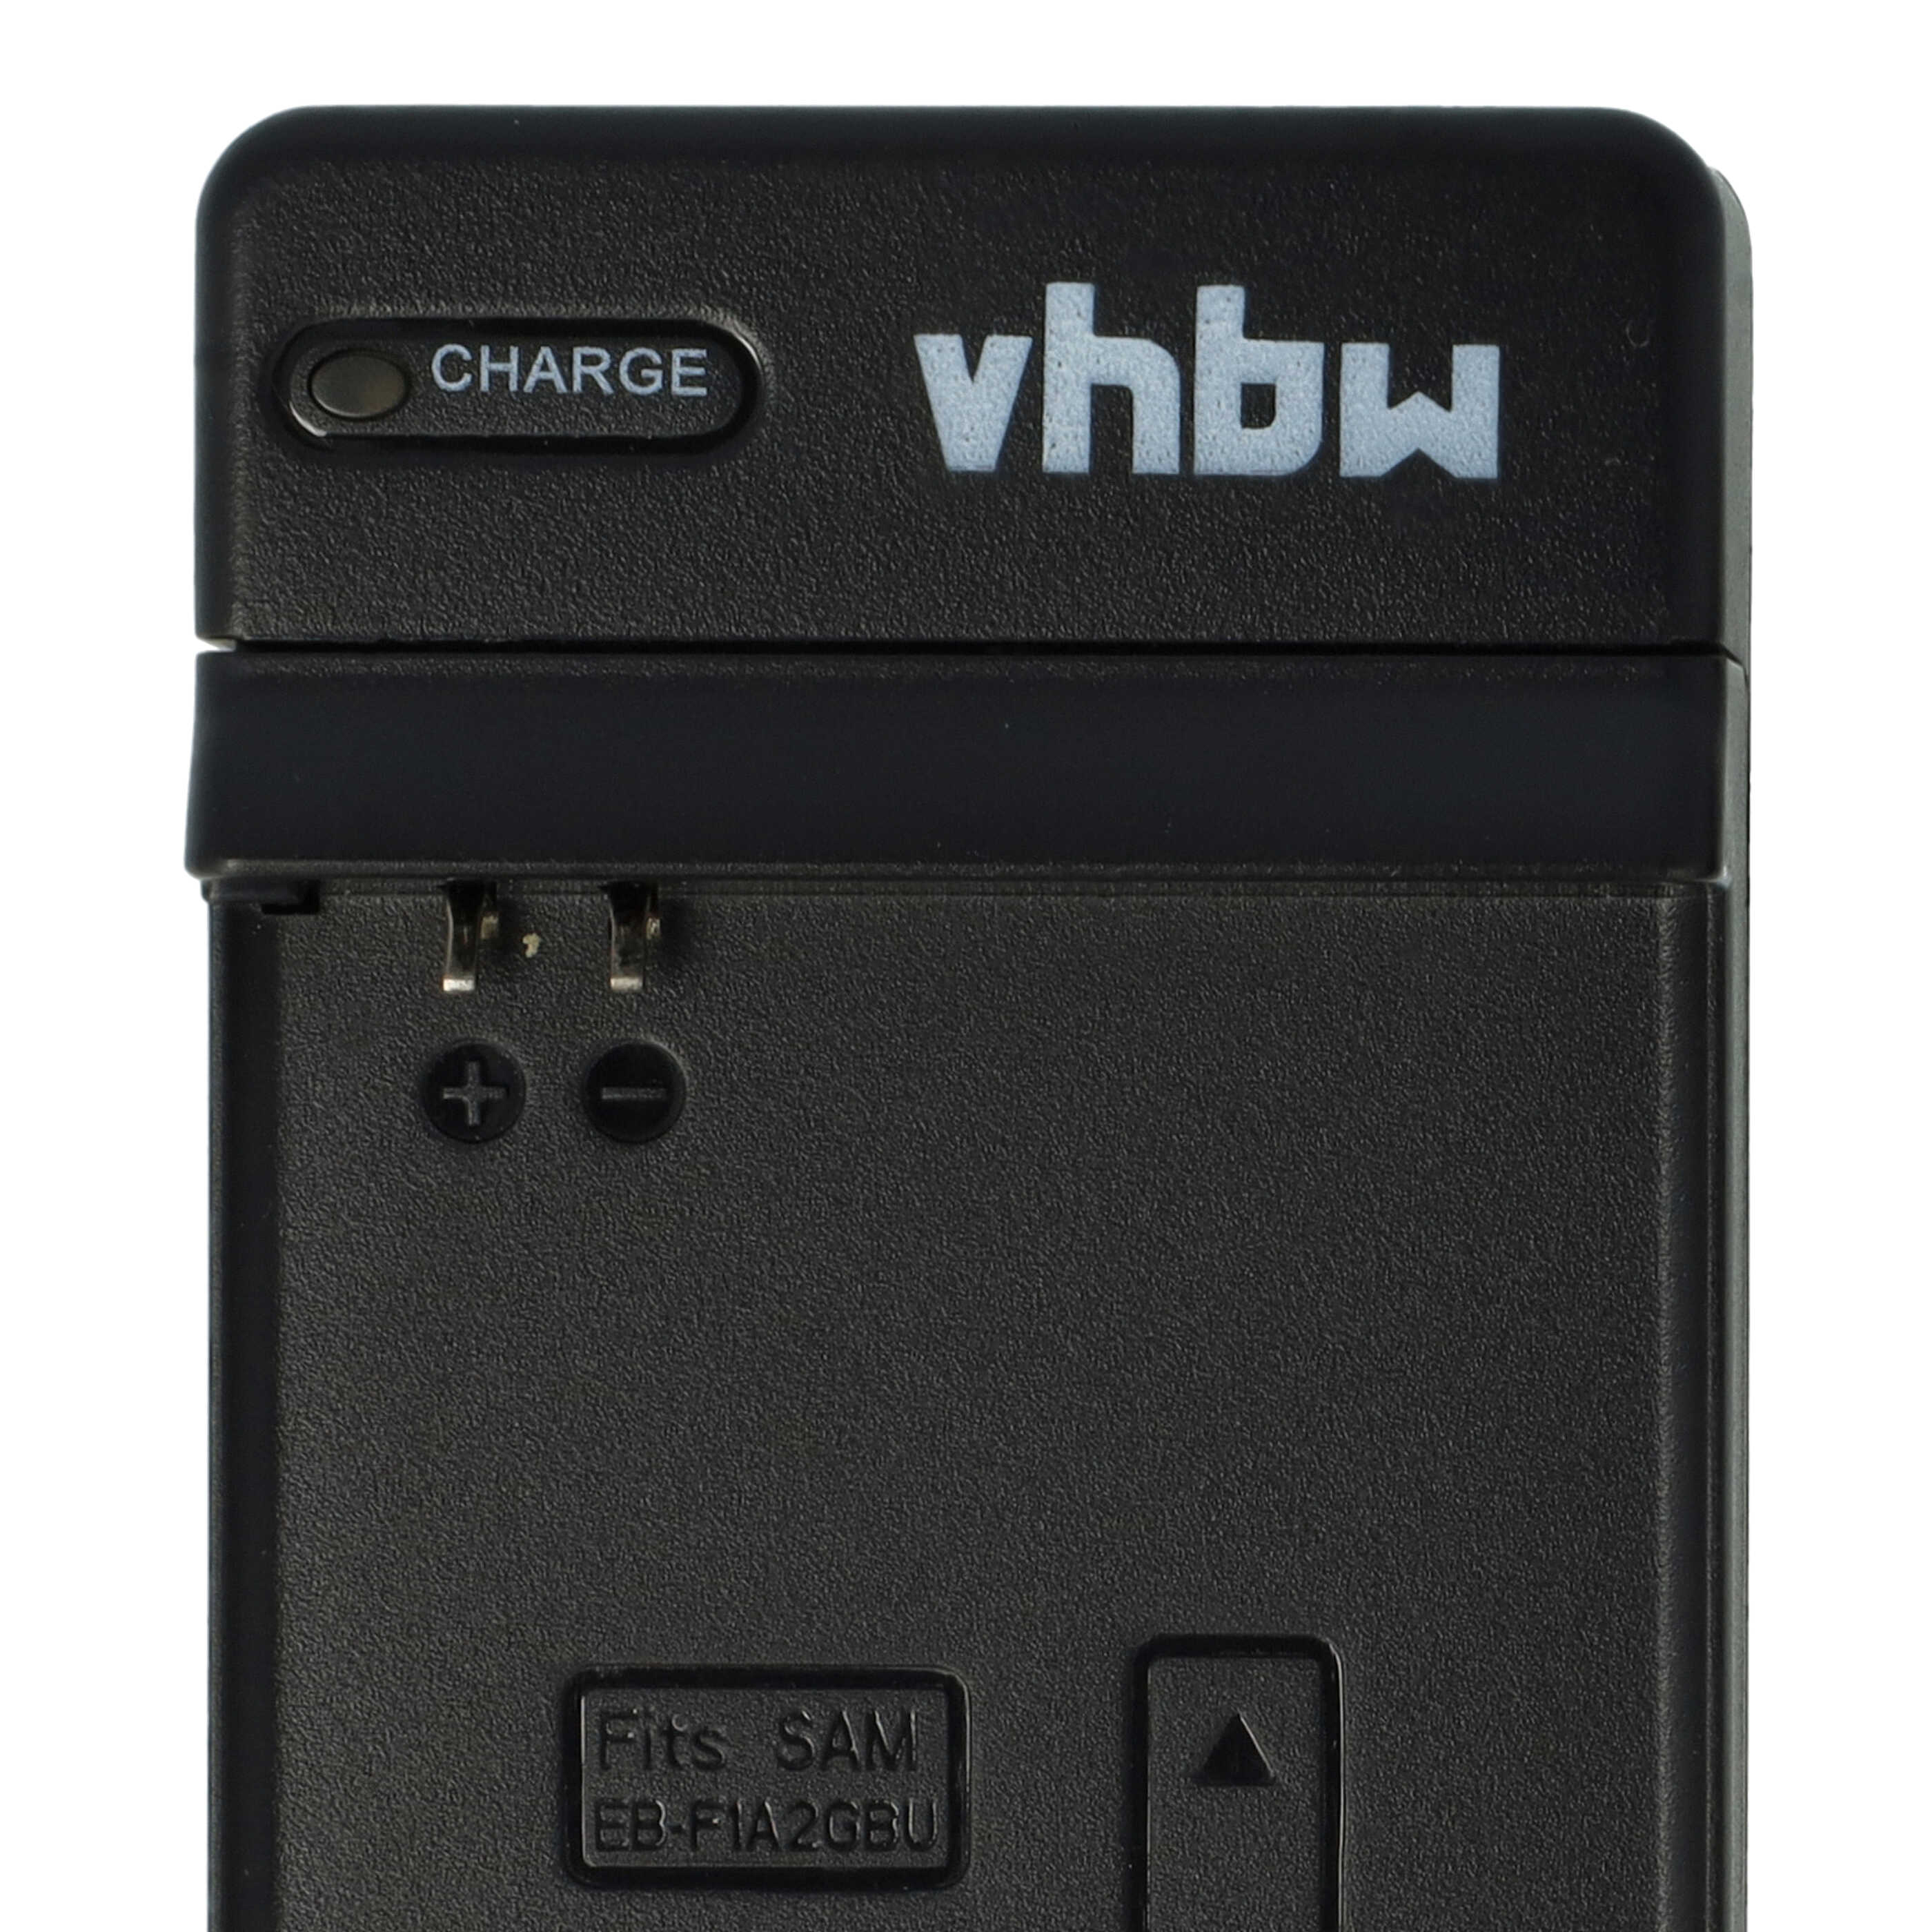 Estación carga USB Micro para baterías de móvi Samsung Samsung SHW-M410 - Carcasa + cable de carga, 40 cm